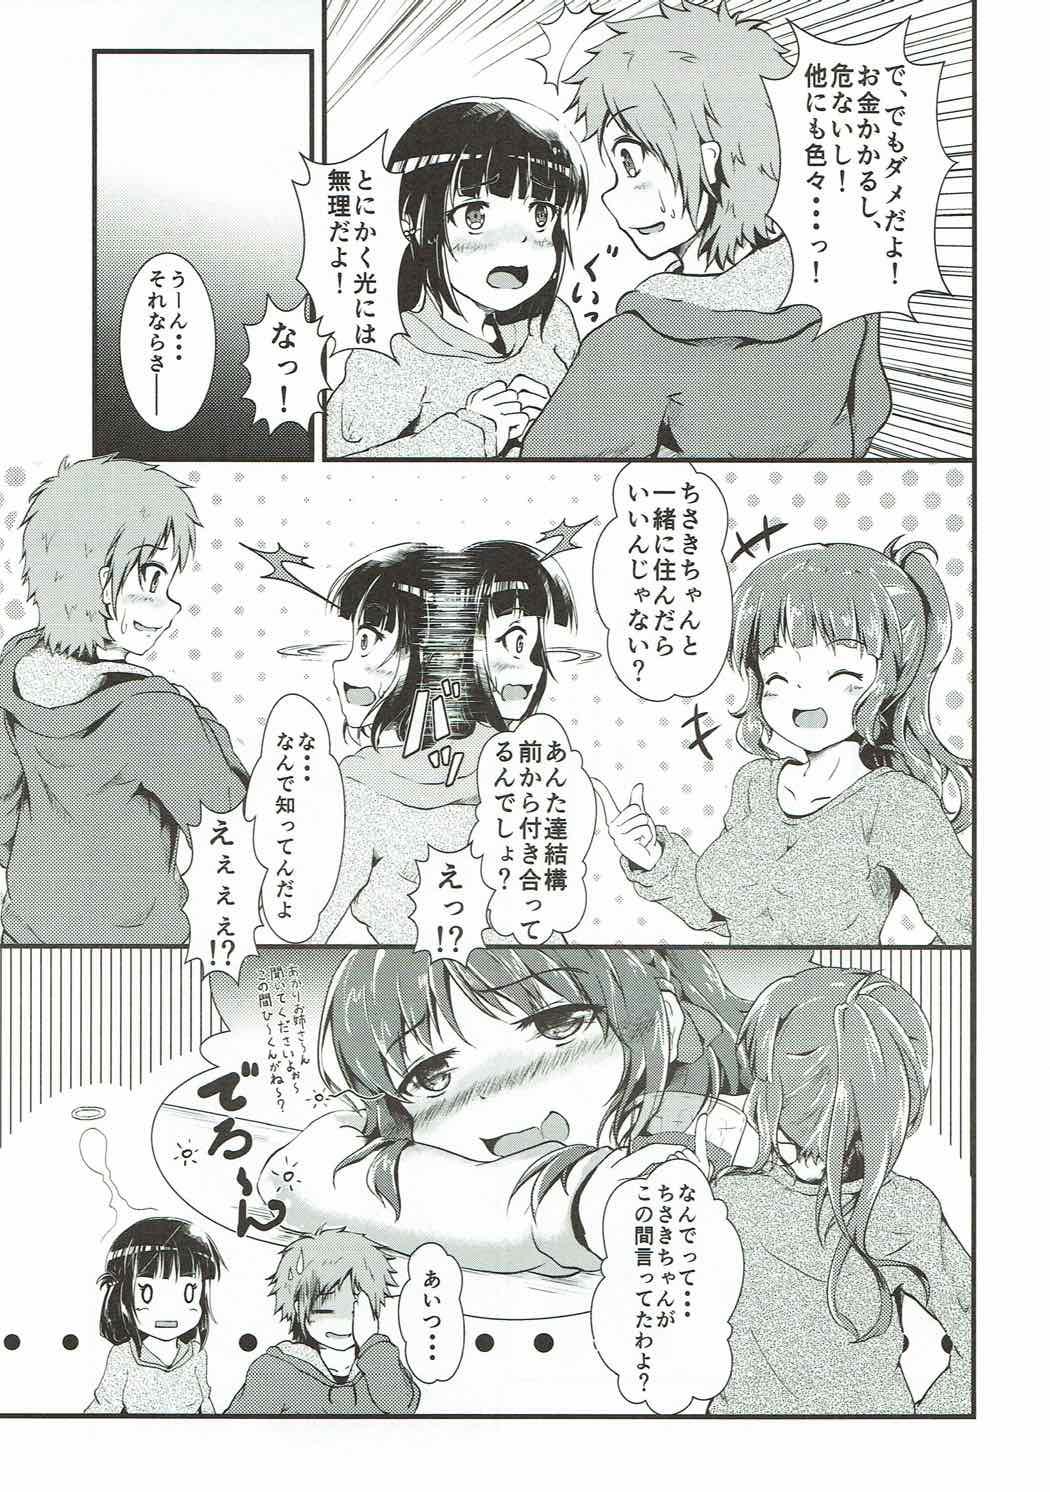 Fucking Chisaki to Issho - Nagi no asukara Step Fantasy - Page 6